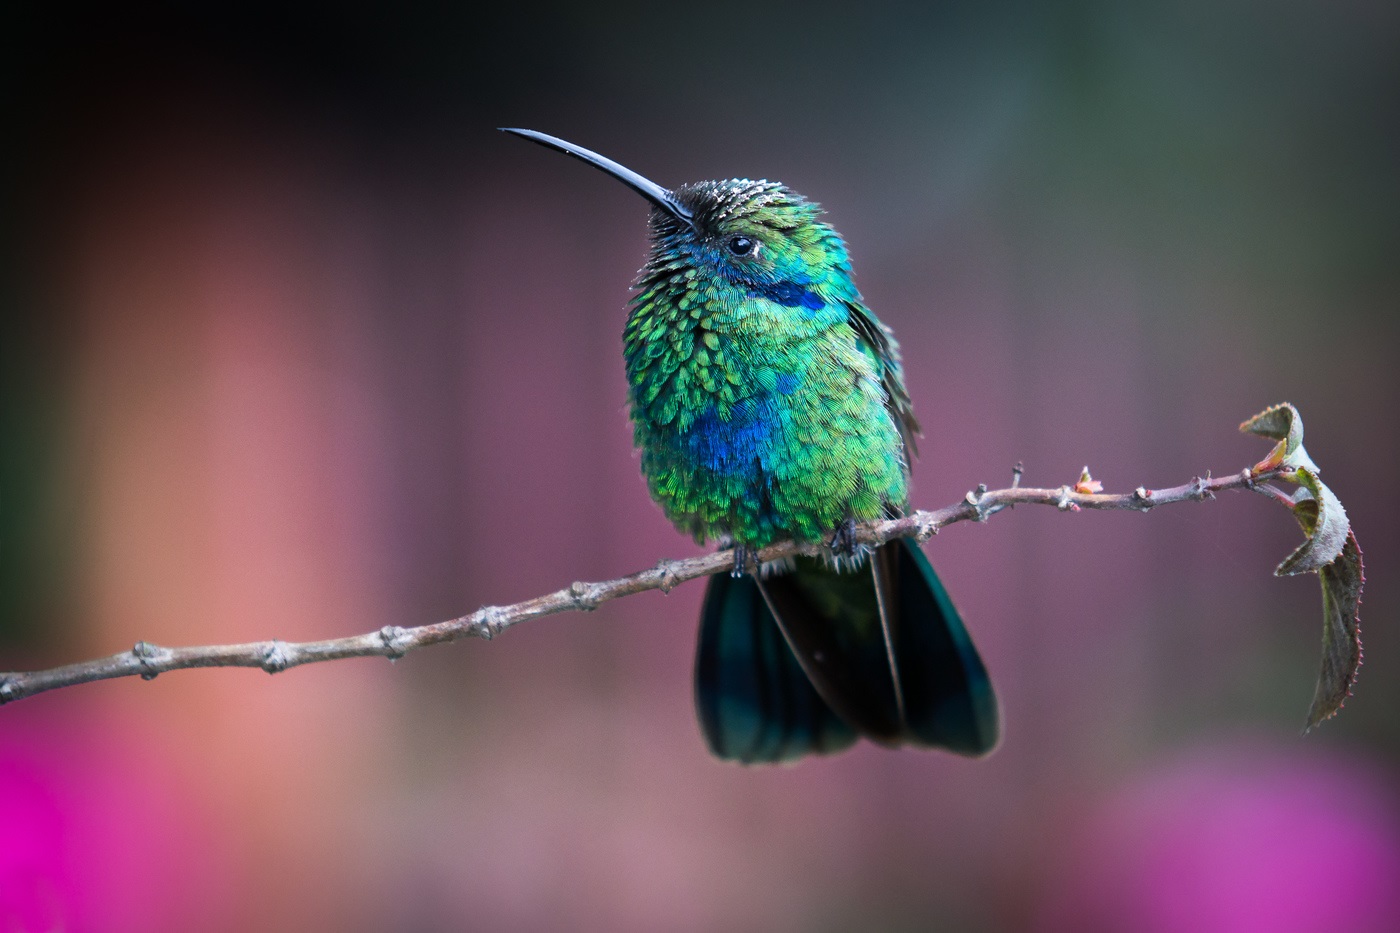 Andes colombiennes: photo d'un colibri sur une branche